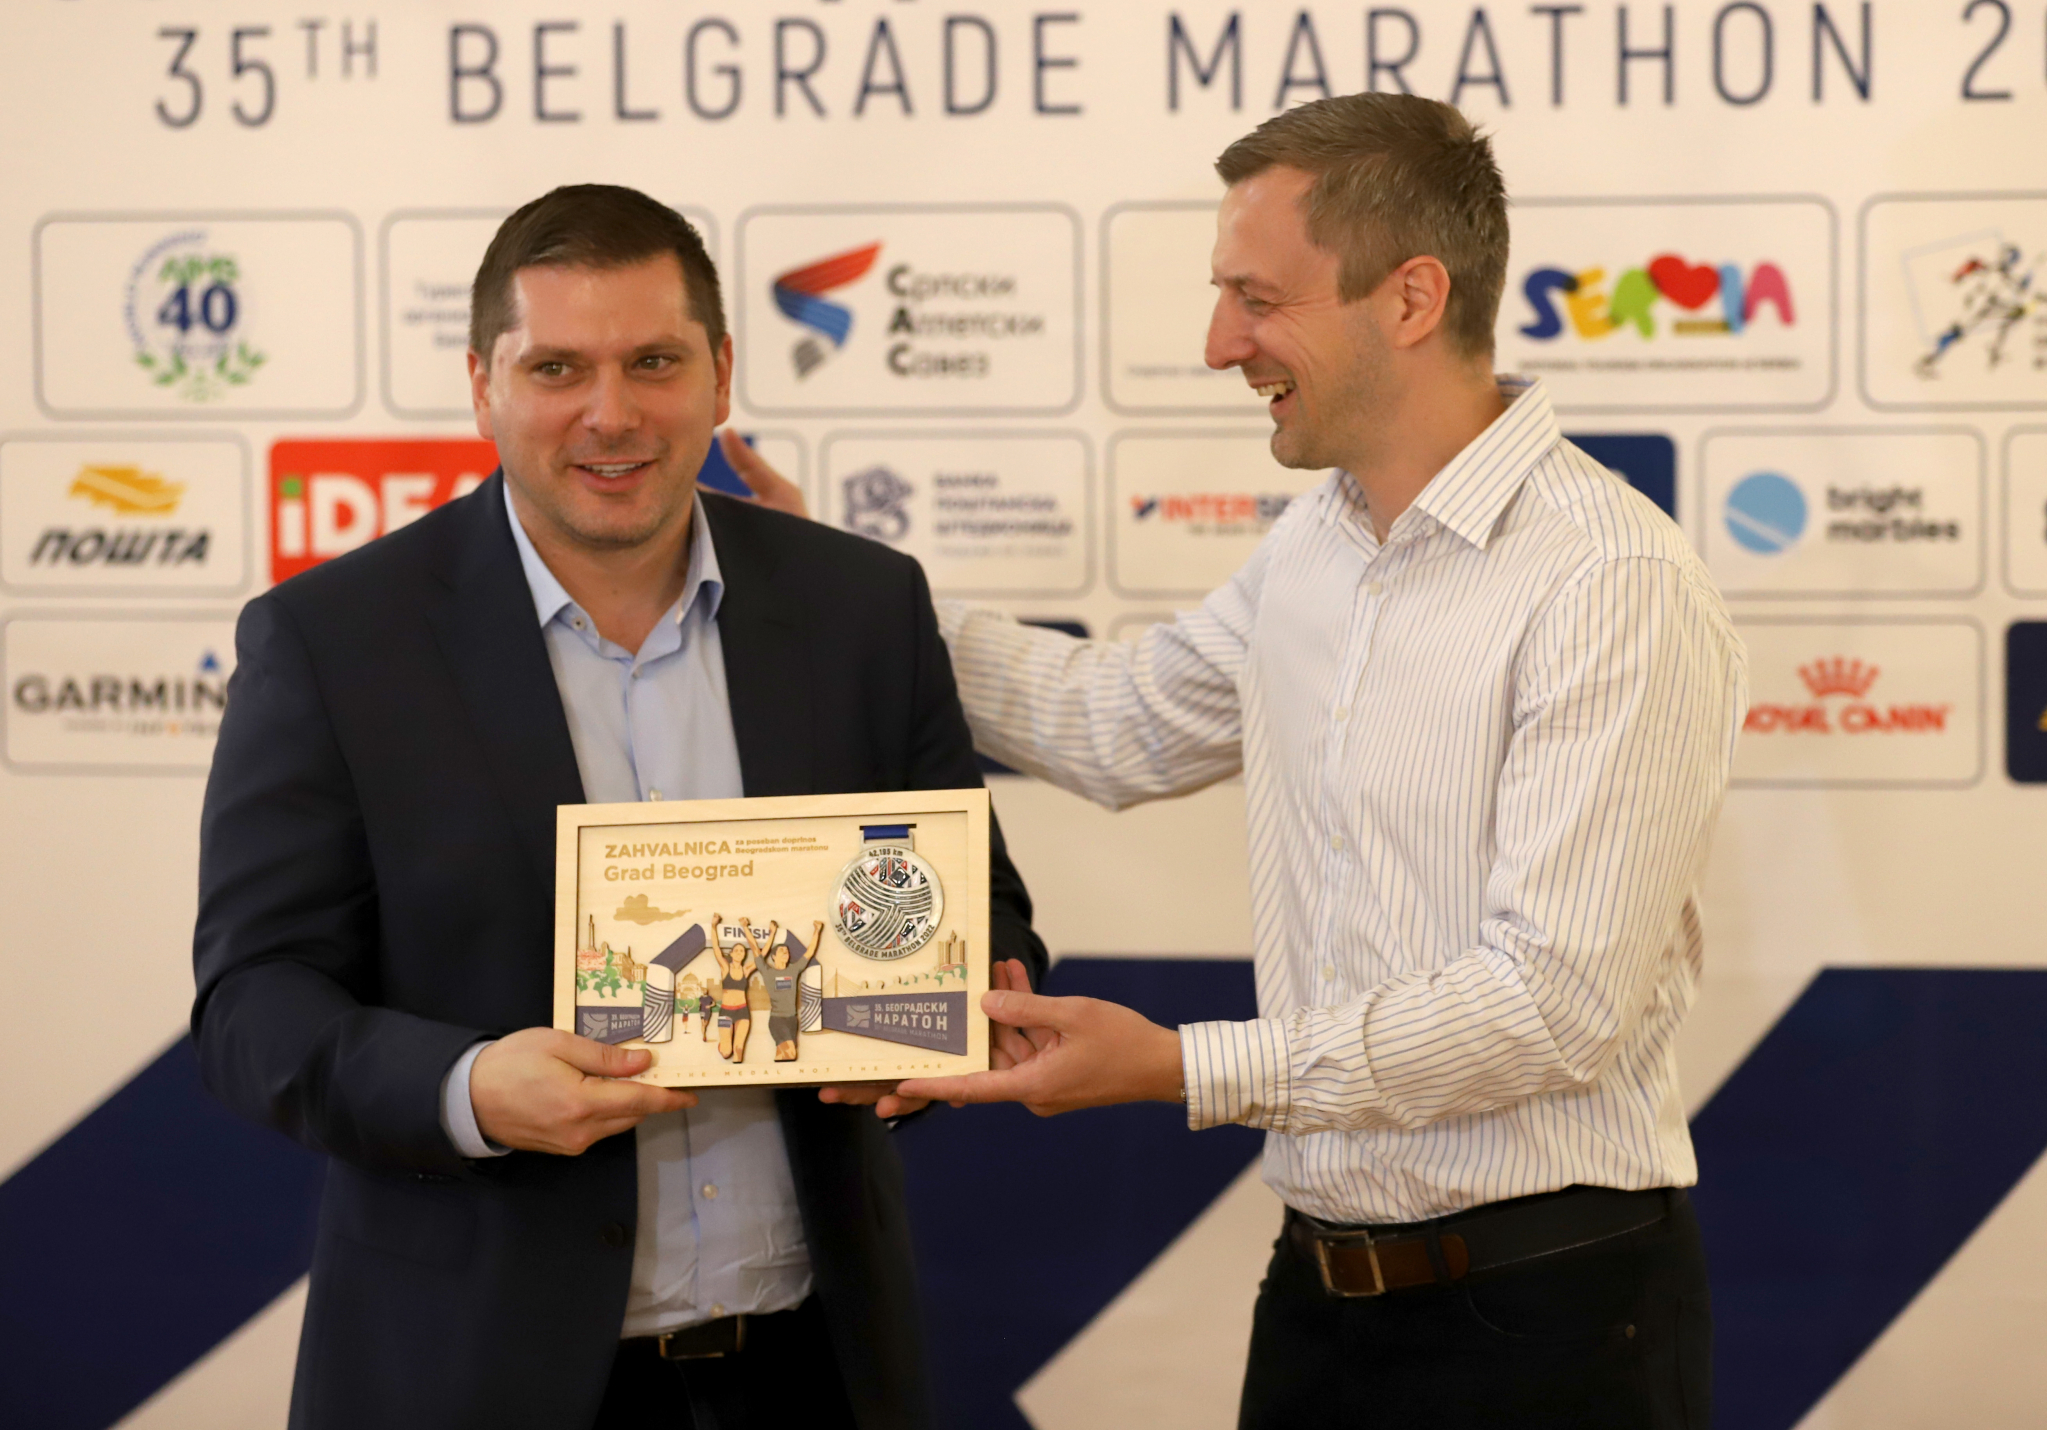 SJAJNO Beogradski maraton se poklonio svojim herojima: Veliko priznanje za 